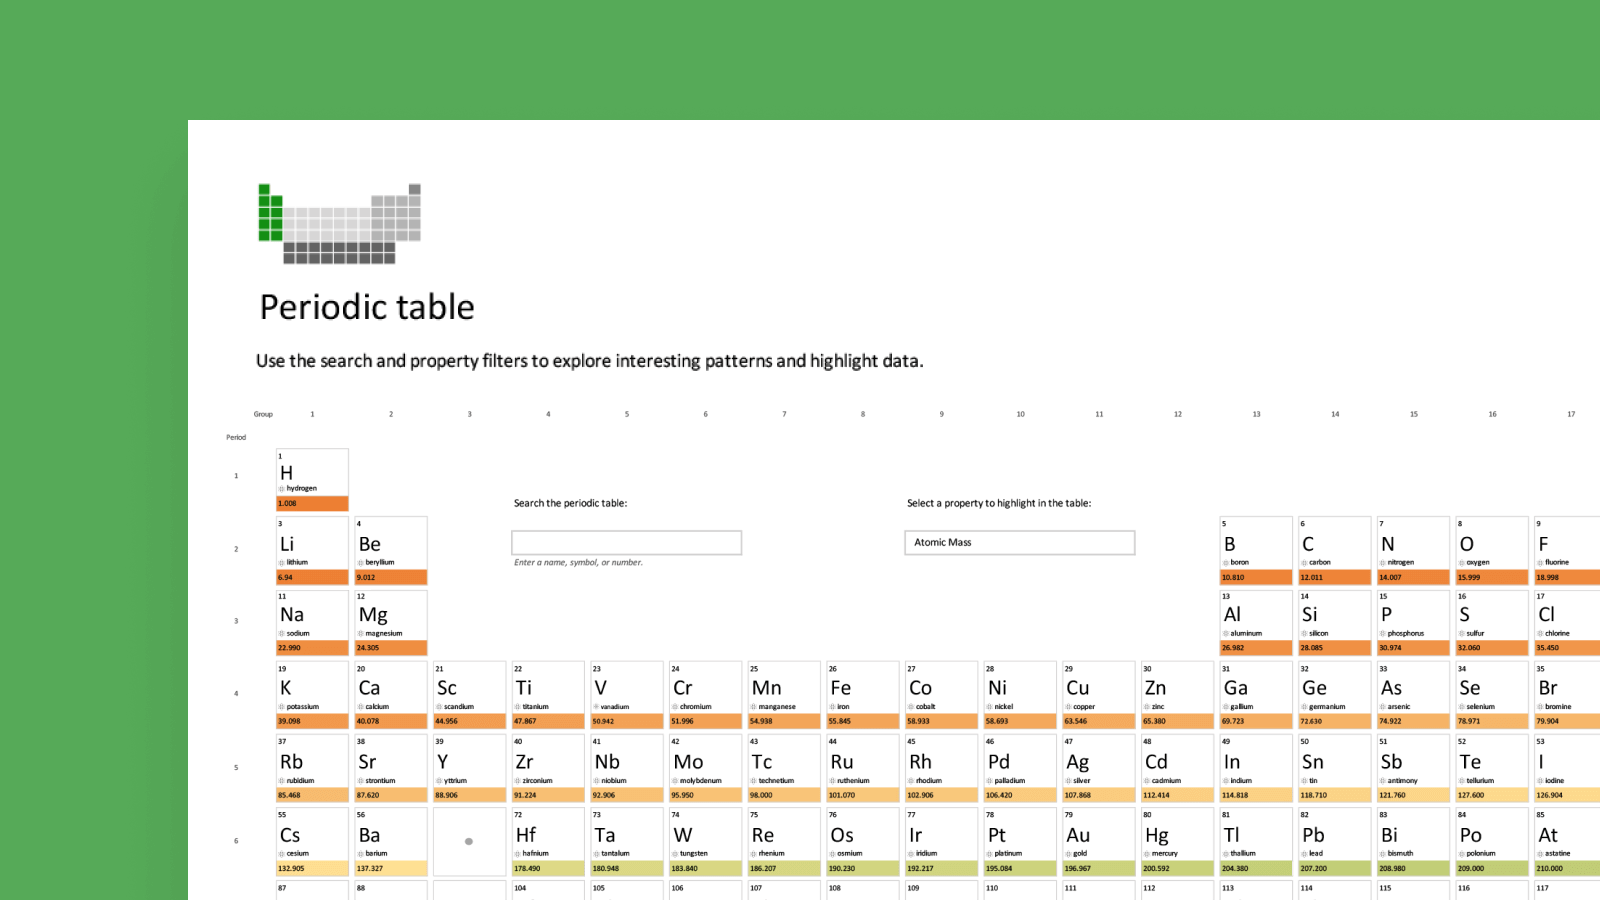 снимок экрана: шаблон периодических таблиц Wolfram